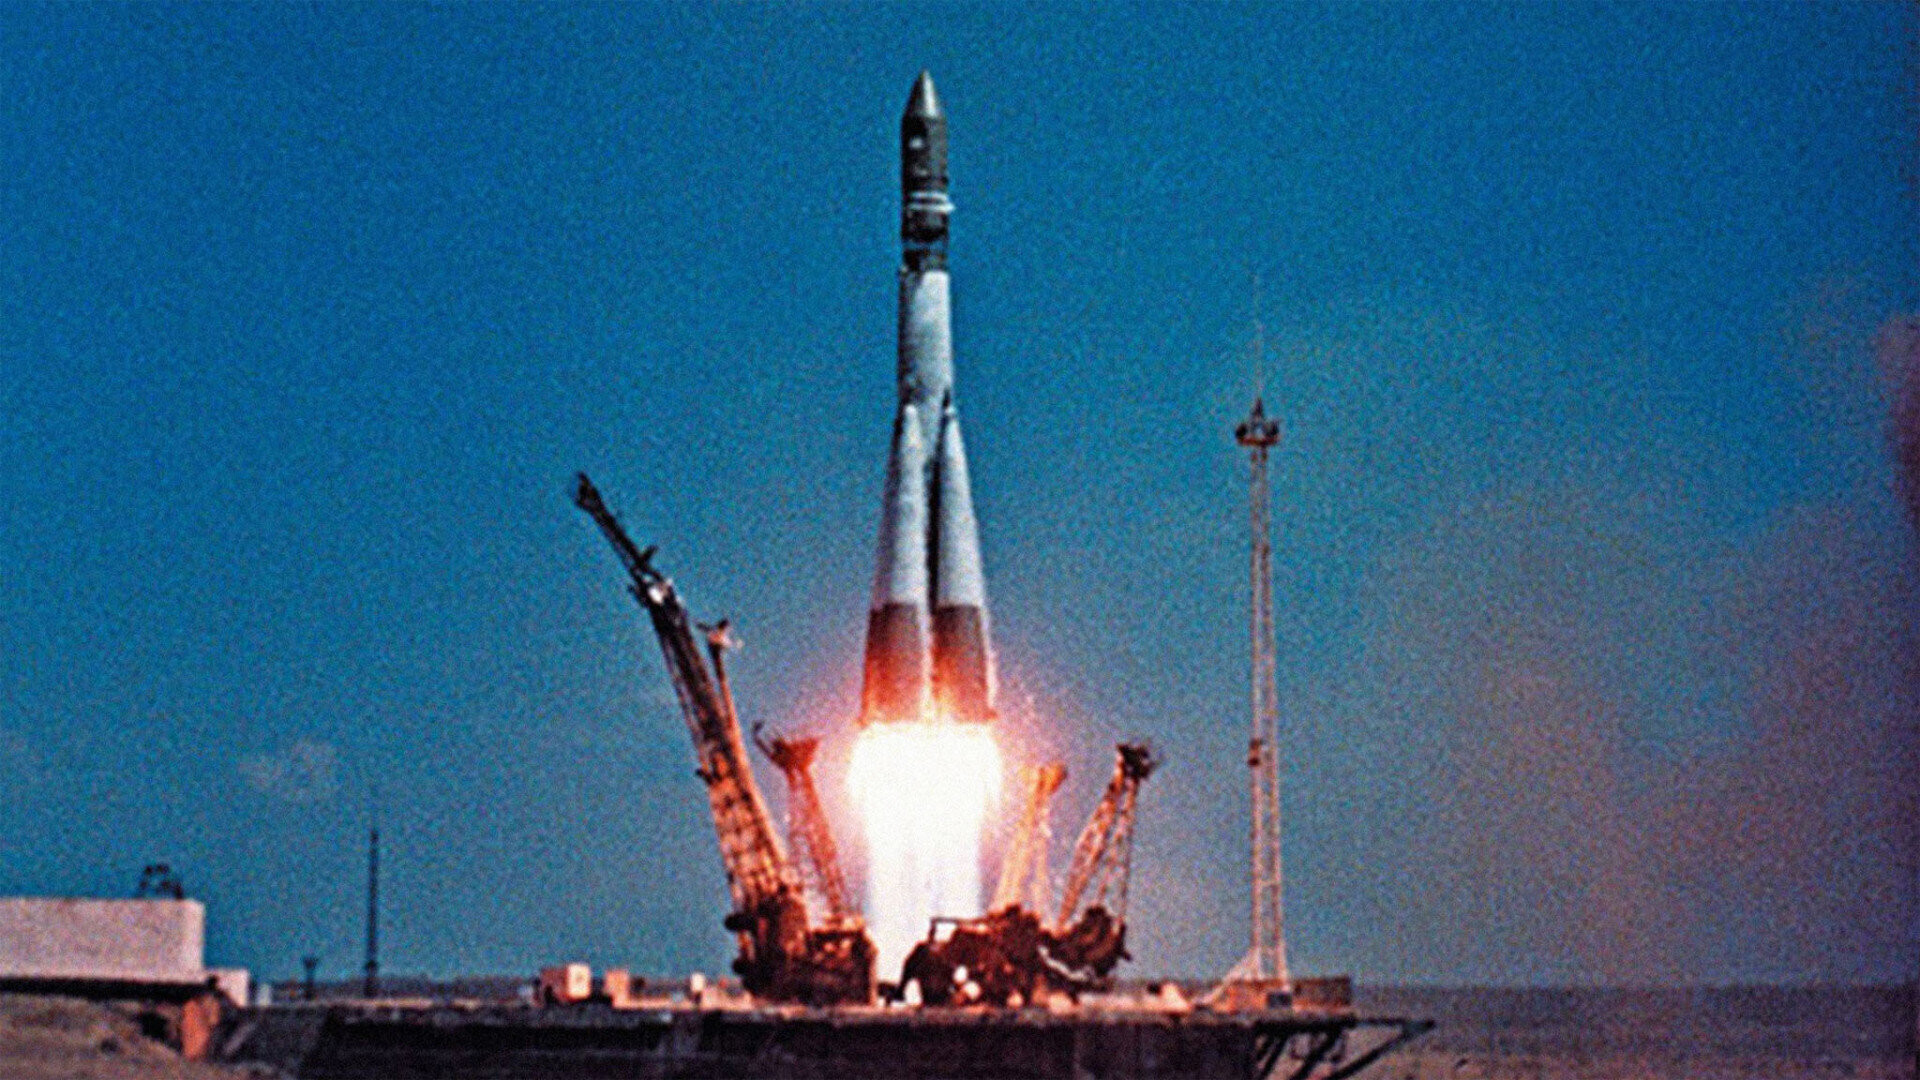 Vào ngày 12/4/1961, Yuri Gagarin khởi động chuyến bay vào không gian, với tư cách trở thành người đầu tiên bay vào vũ trụ. Anh ấy khởi động sứ mệnh phi thuyền Vostok 1, bay vòng quanh Trái Đất một lần trong suốt 108 phút, trước khi anh và tàu vũ trụ của mình tiếp đất an toàn bằng dù xuống Trái Đất. (Ảnh: Google)